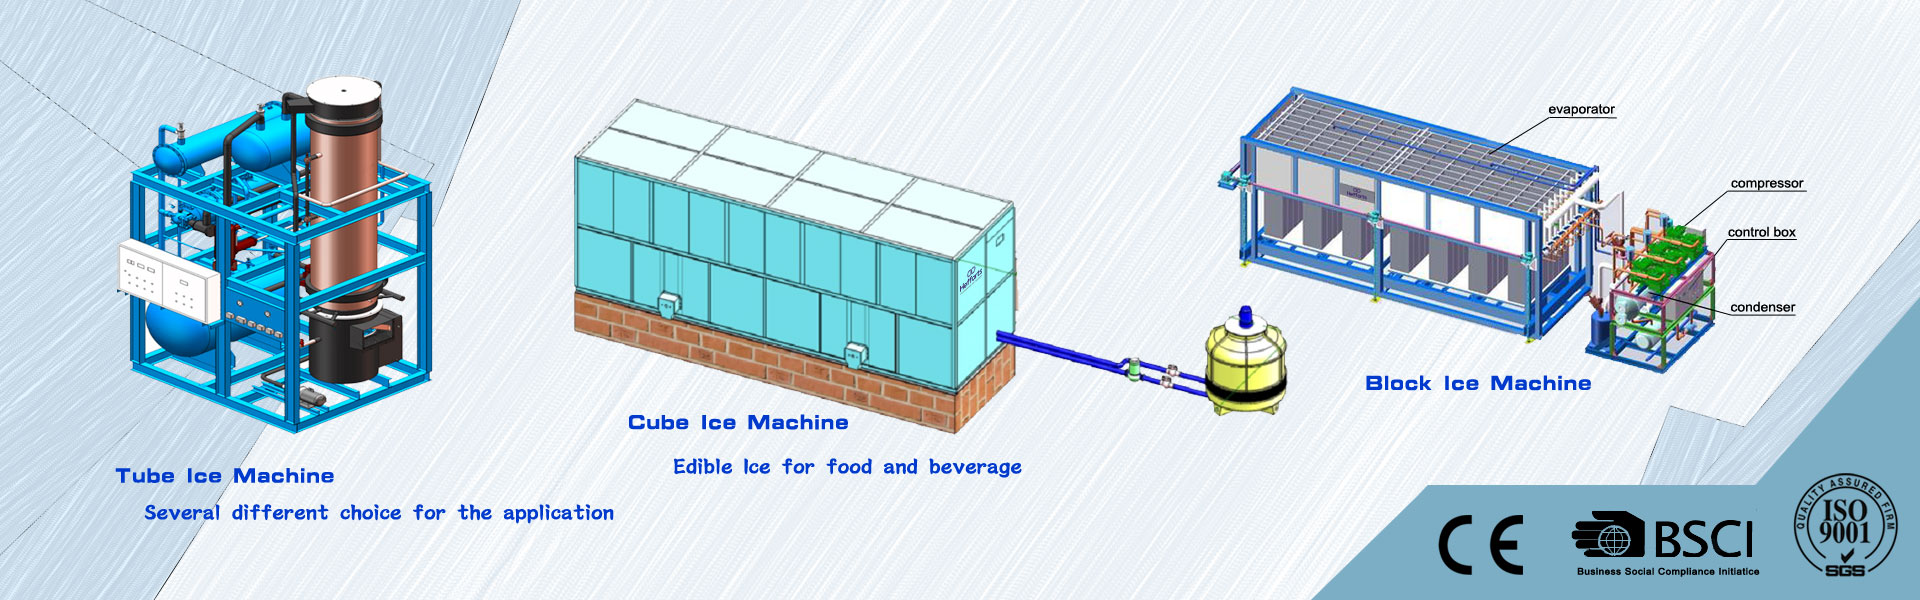 stroj na výrobu ledu, výrobník ledu, studená místnost,Guangzhou Hefforts Refrigeration Equipment Co.,Ltd.